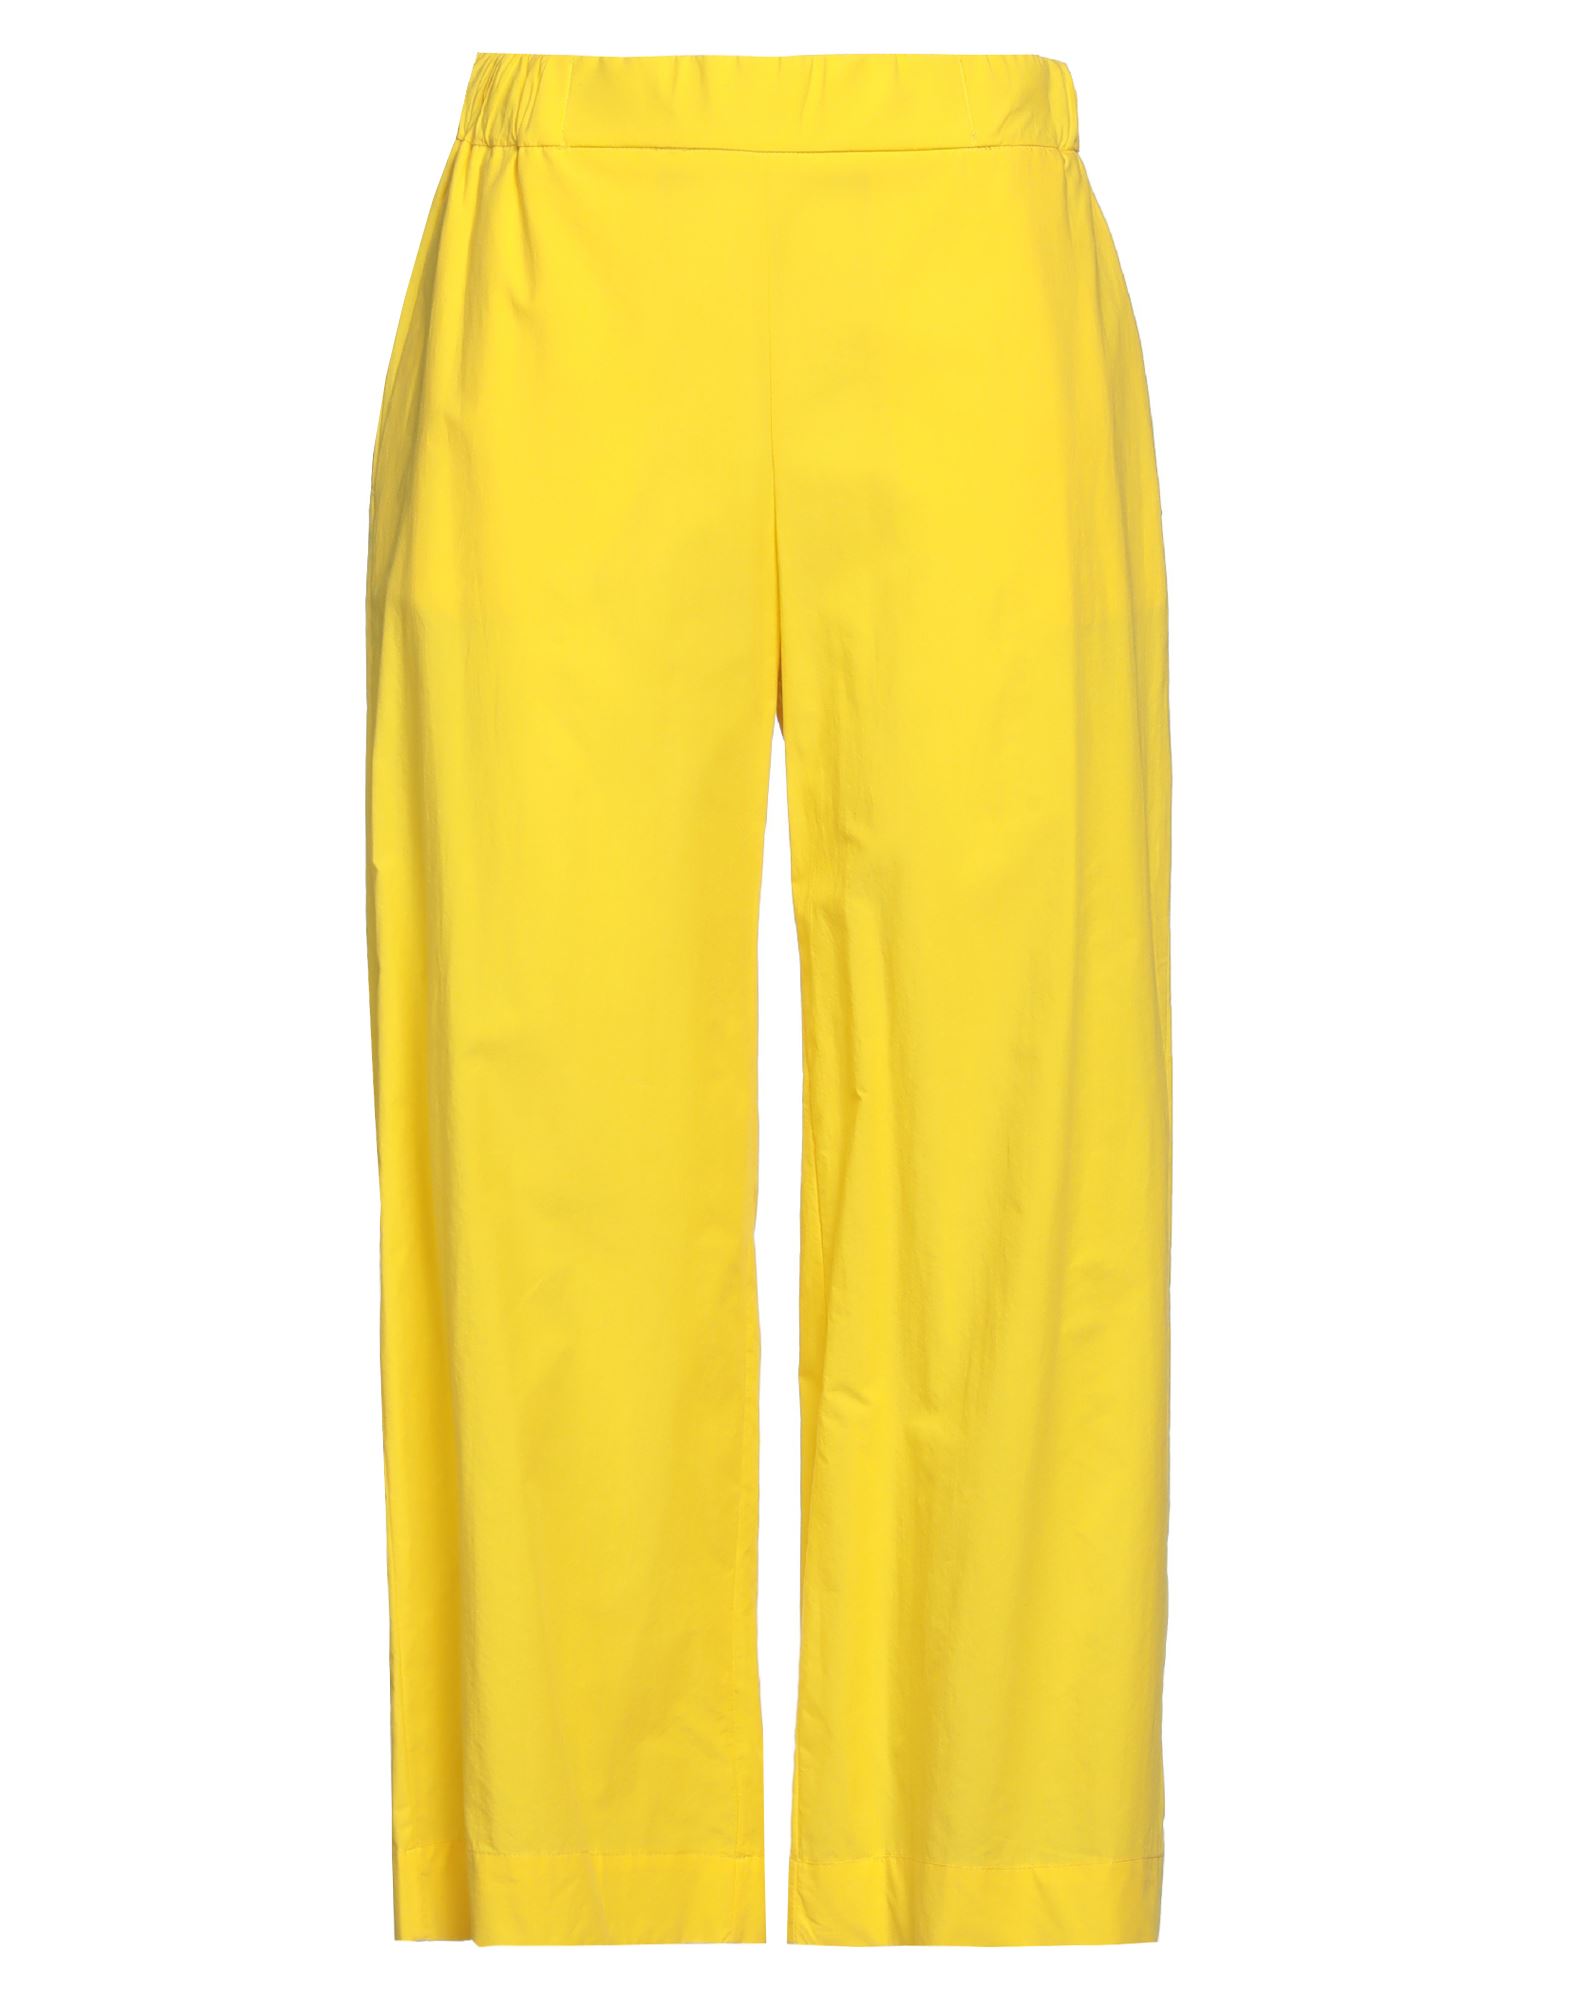 Ottod'ame Woman Pants Yellow Size 4 Cotton